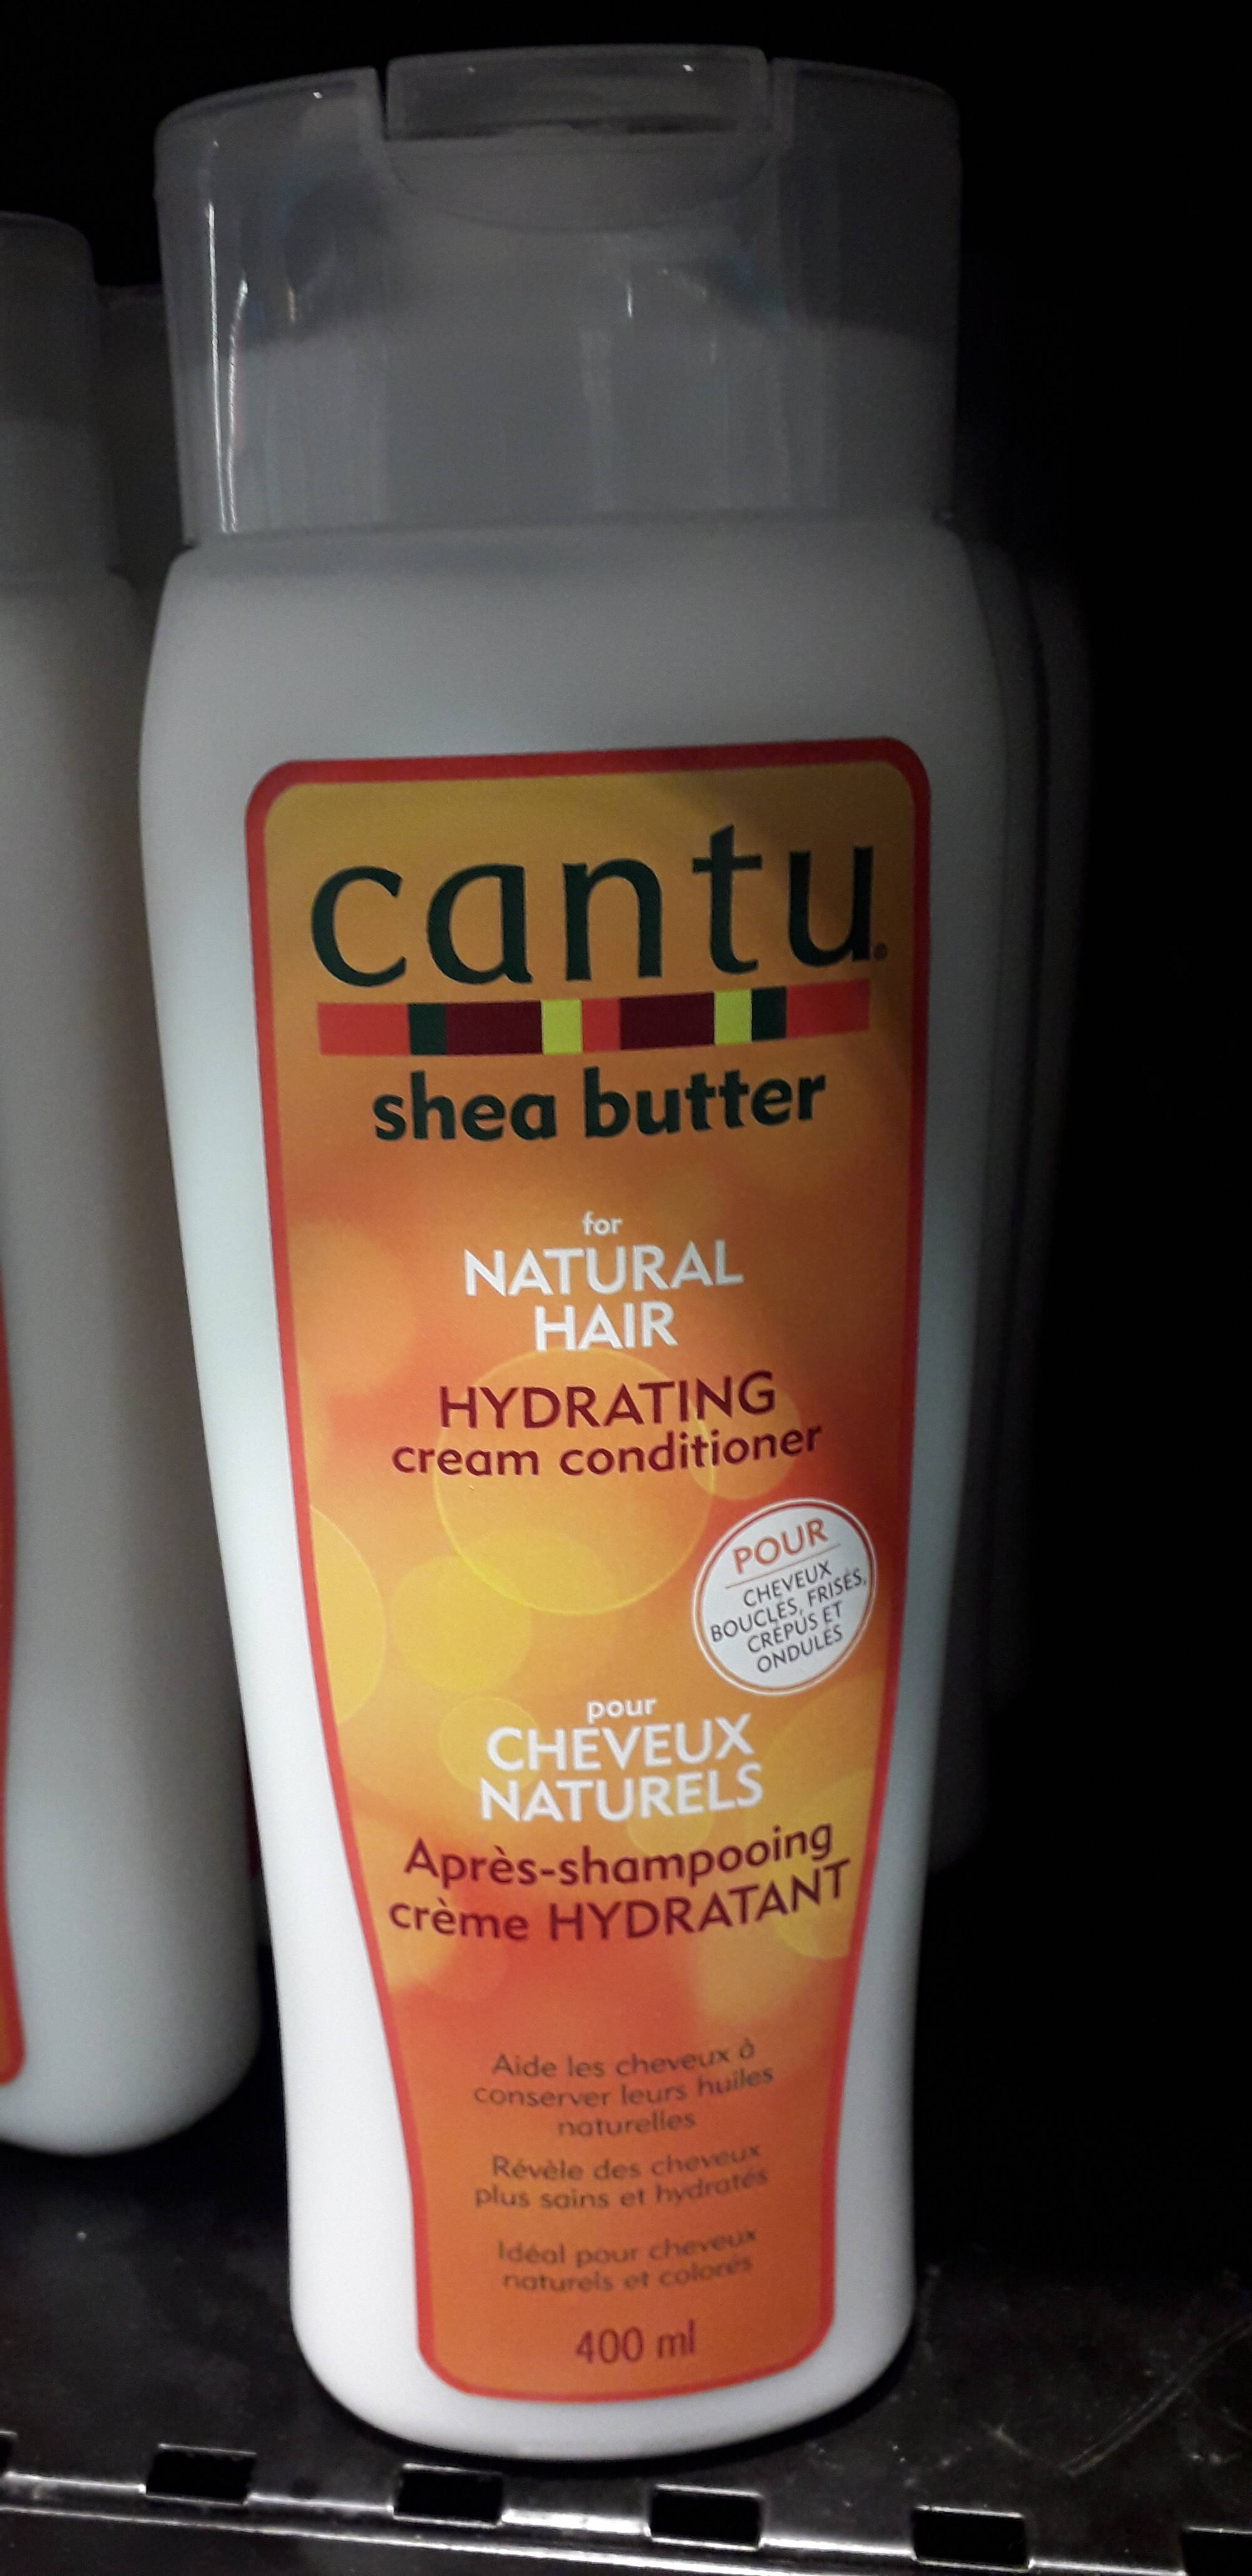 CANTU - Cheveux naturels - Après-shampooing hydratant 